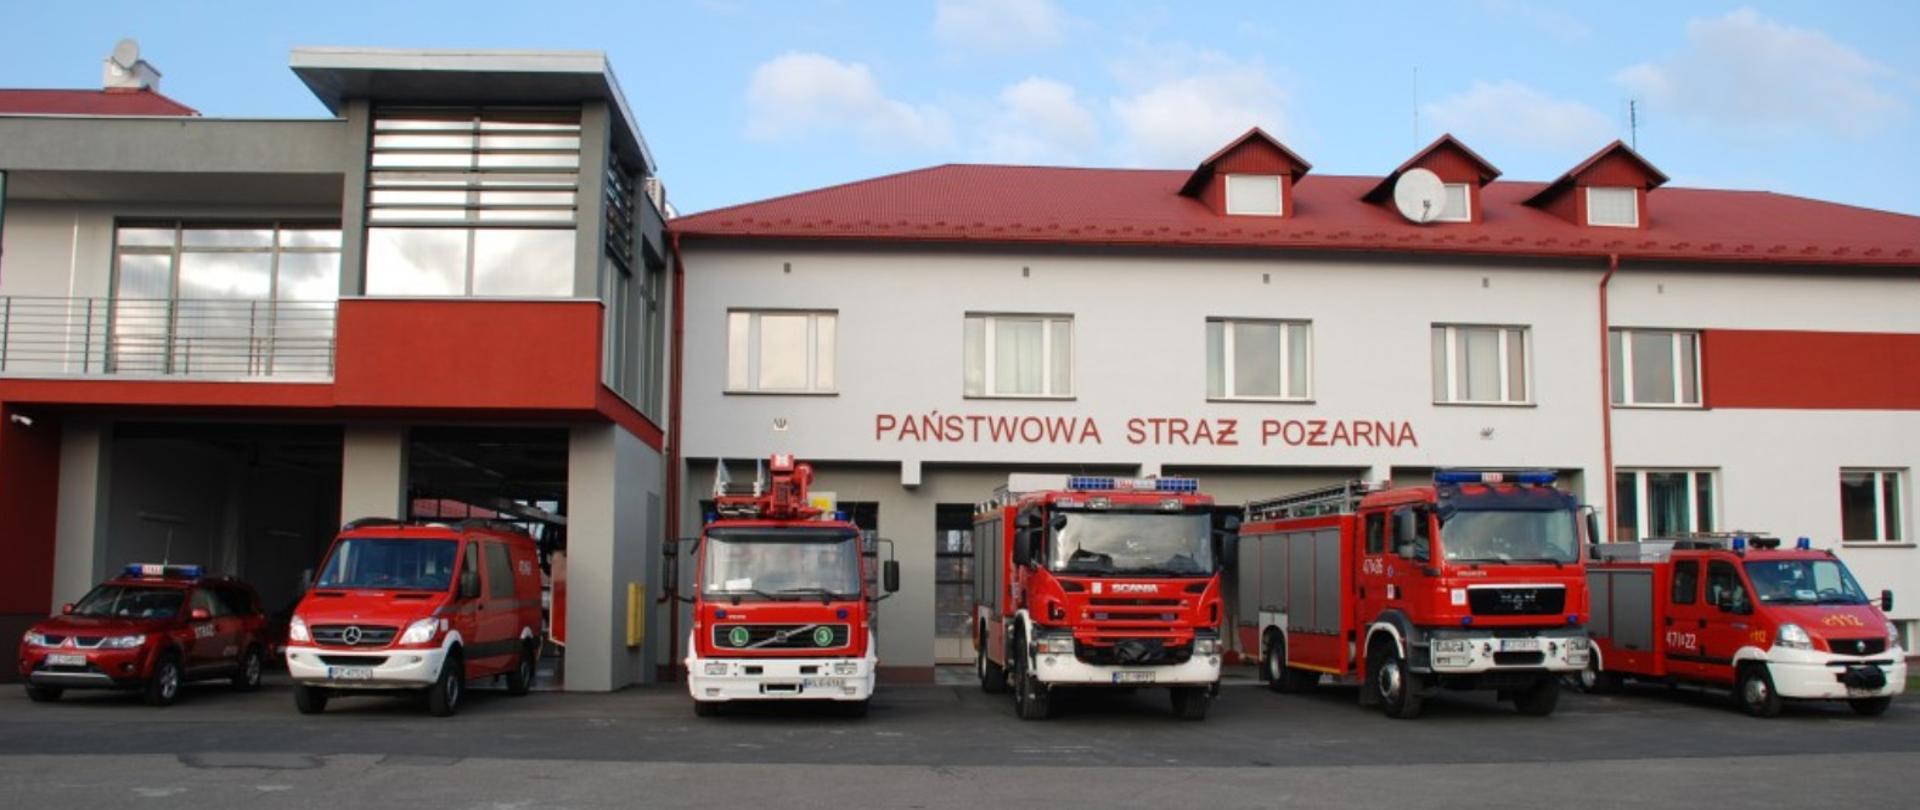 Na zdjęciu widzimy pojazdy pożarnicze w tle widać budynek jednostki ratowniczo-gaśniczej w Leżajsku.